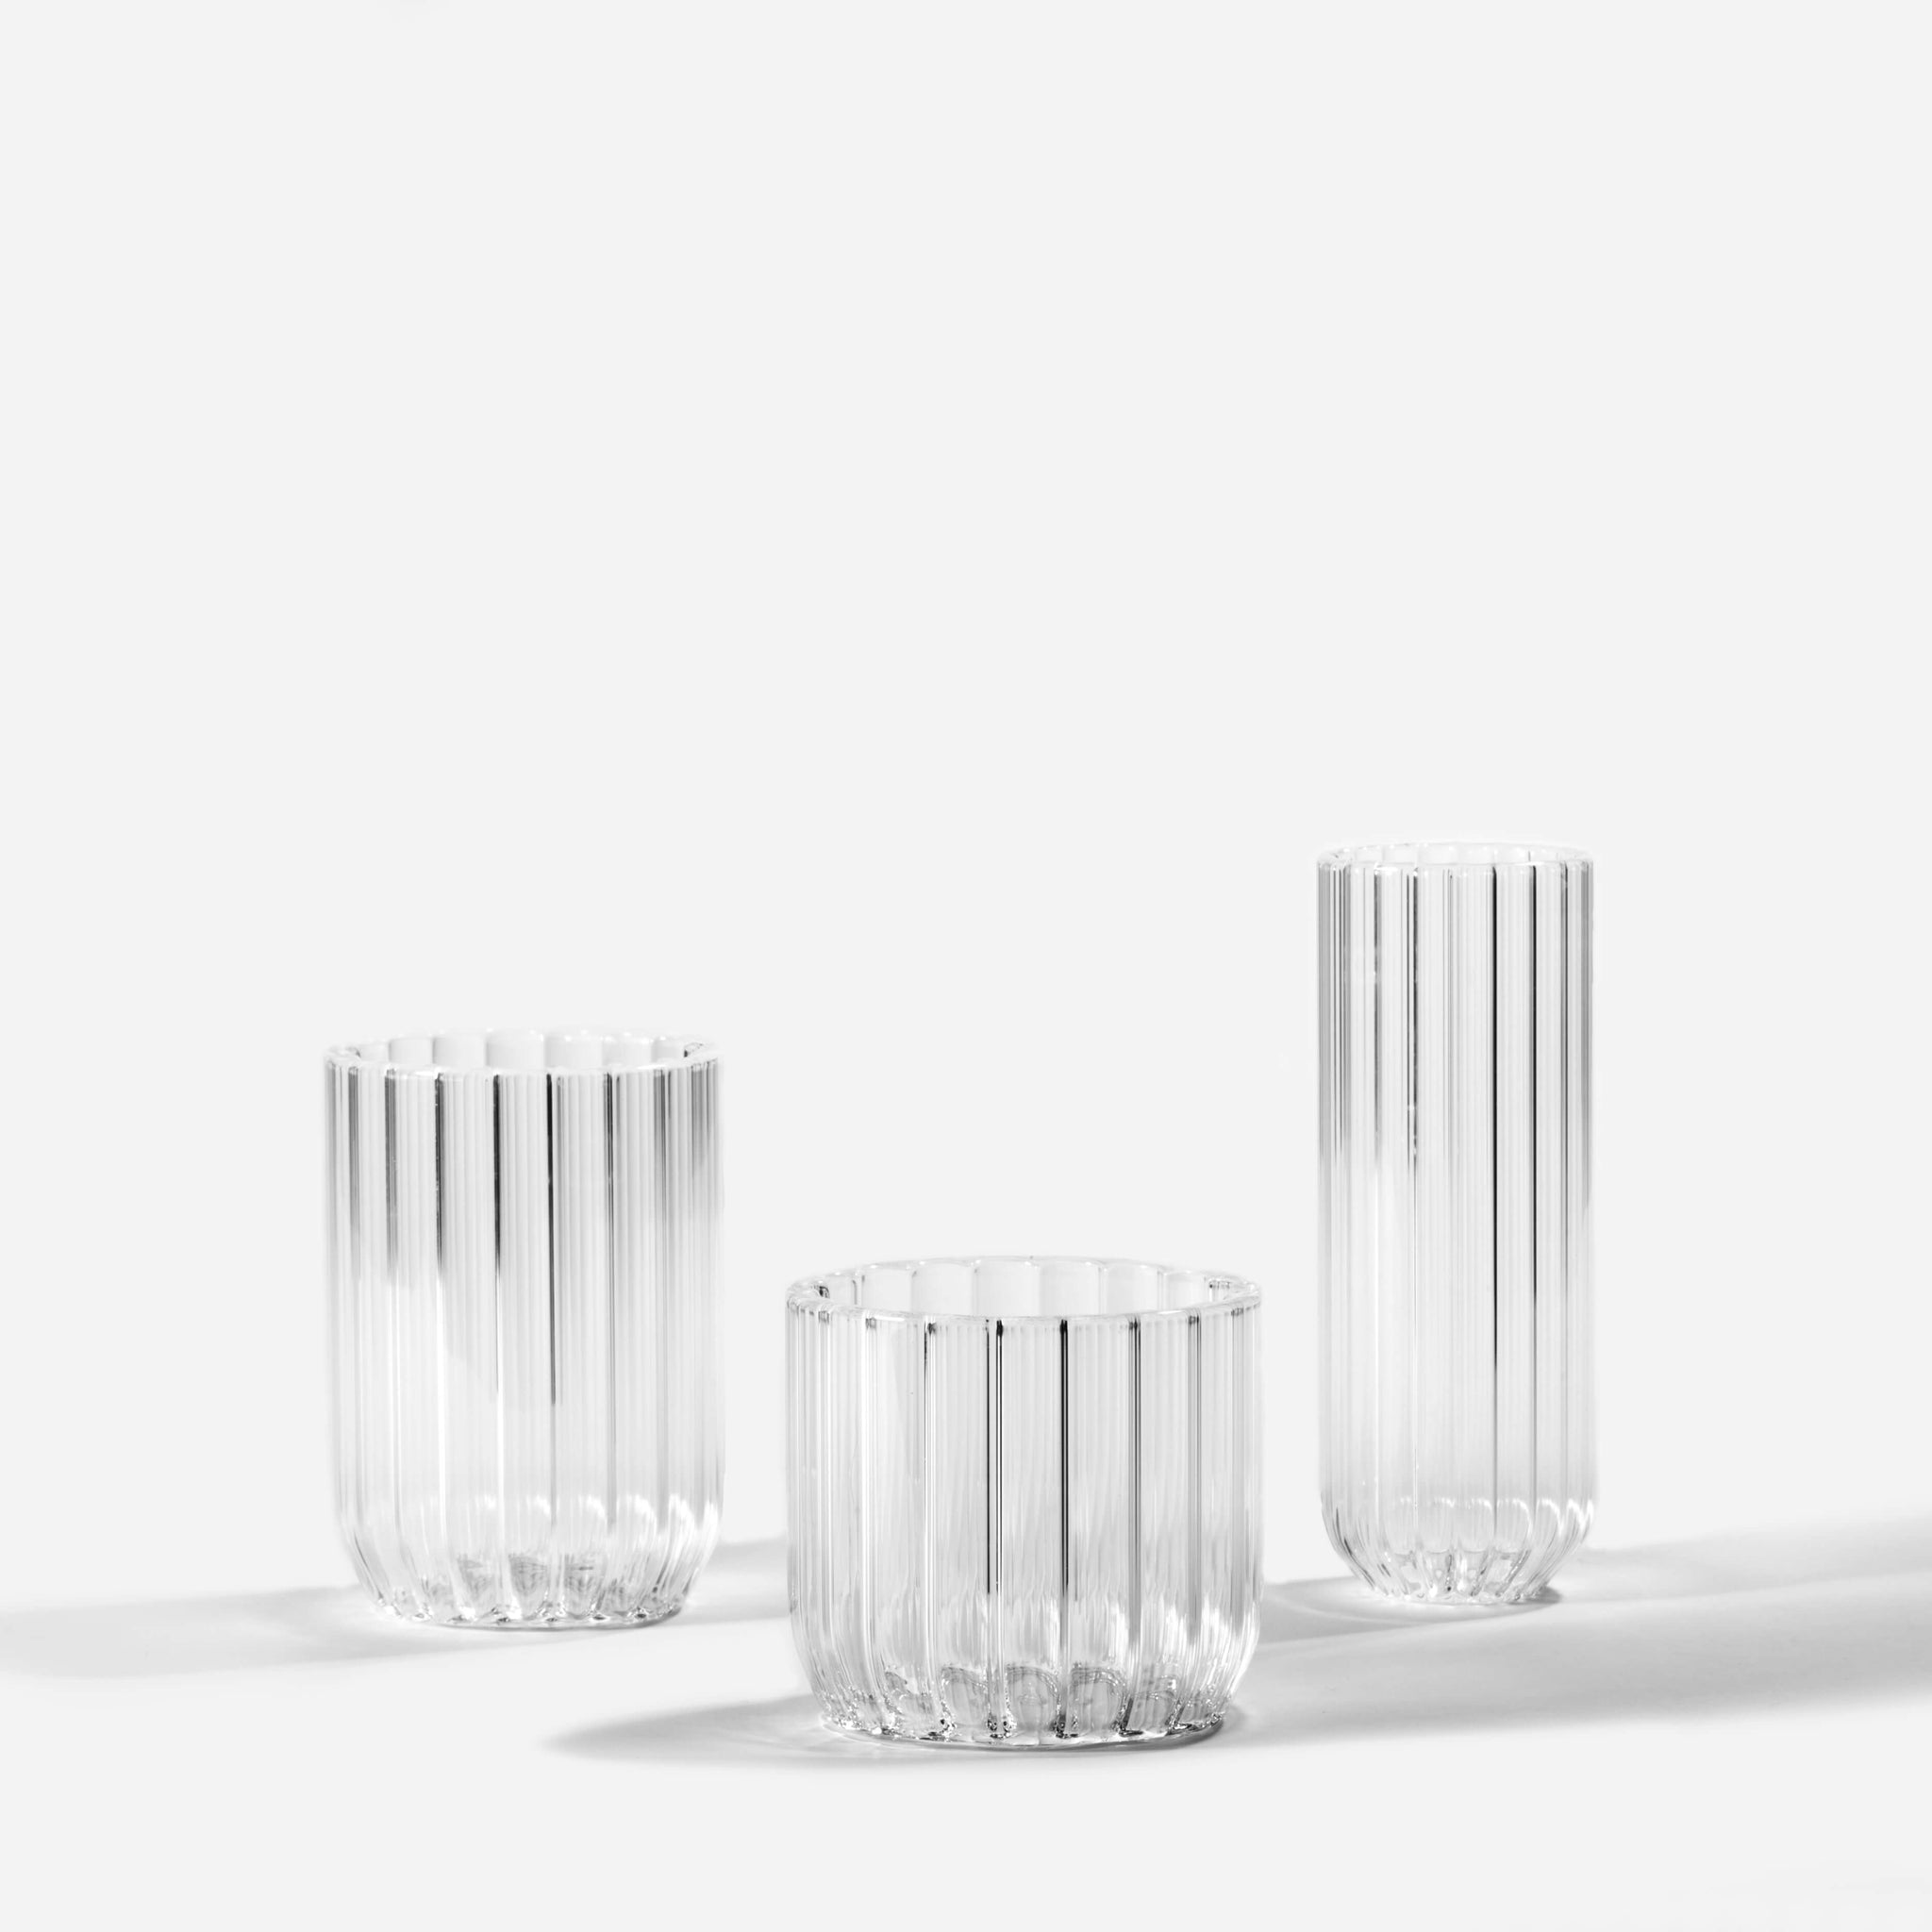 https://www.bonadea.com/cdn/shop/products/Felicia_Ferrone_-_Dearborn_Trio_Glassware_-_BONADEA._2d33677a-fa37-40fe-b9c1-1c1aa4f12ec0_1024x1024@2x.jpg?v=1508324497